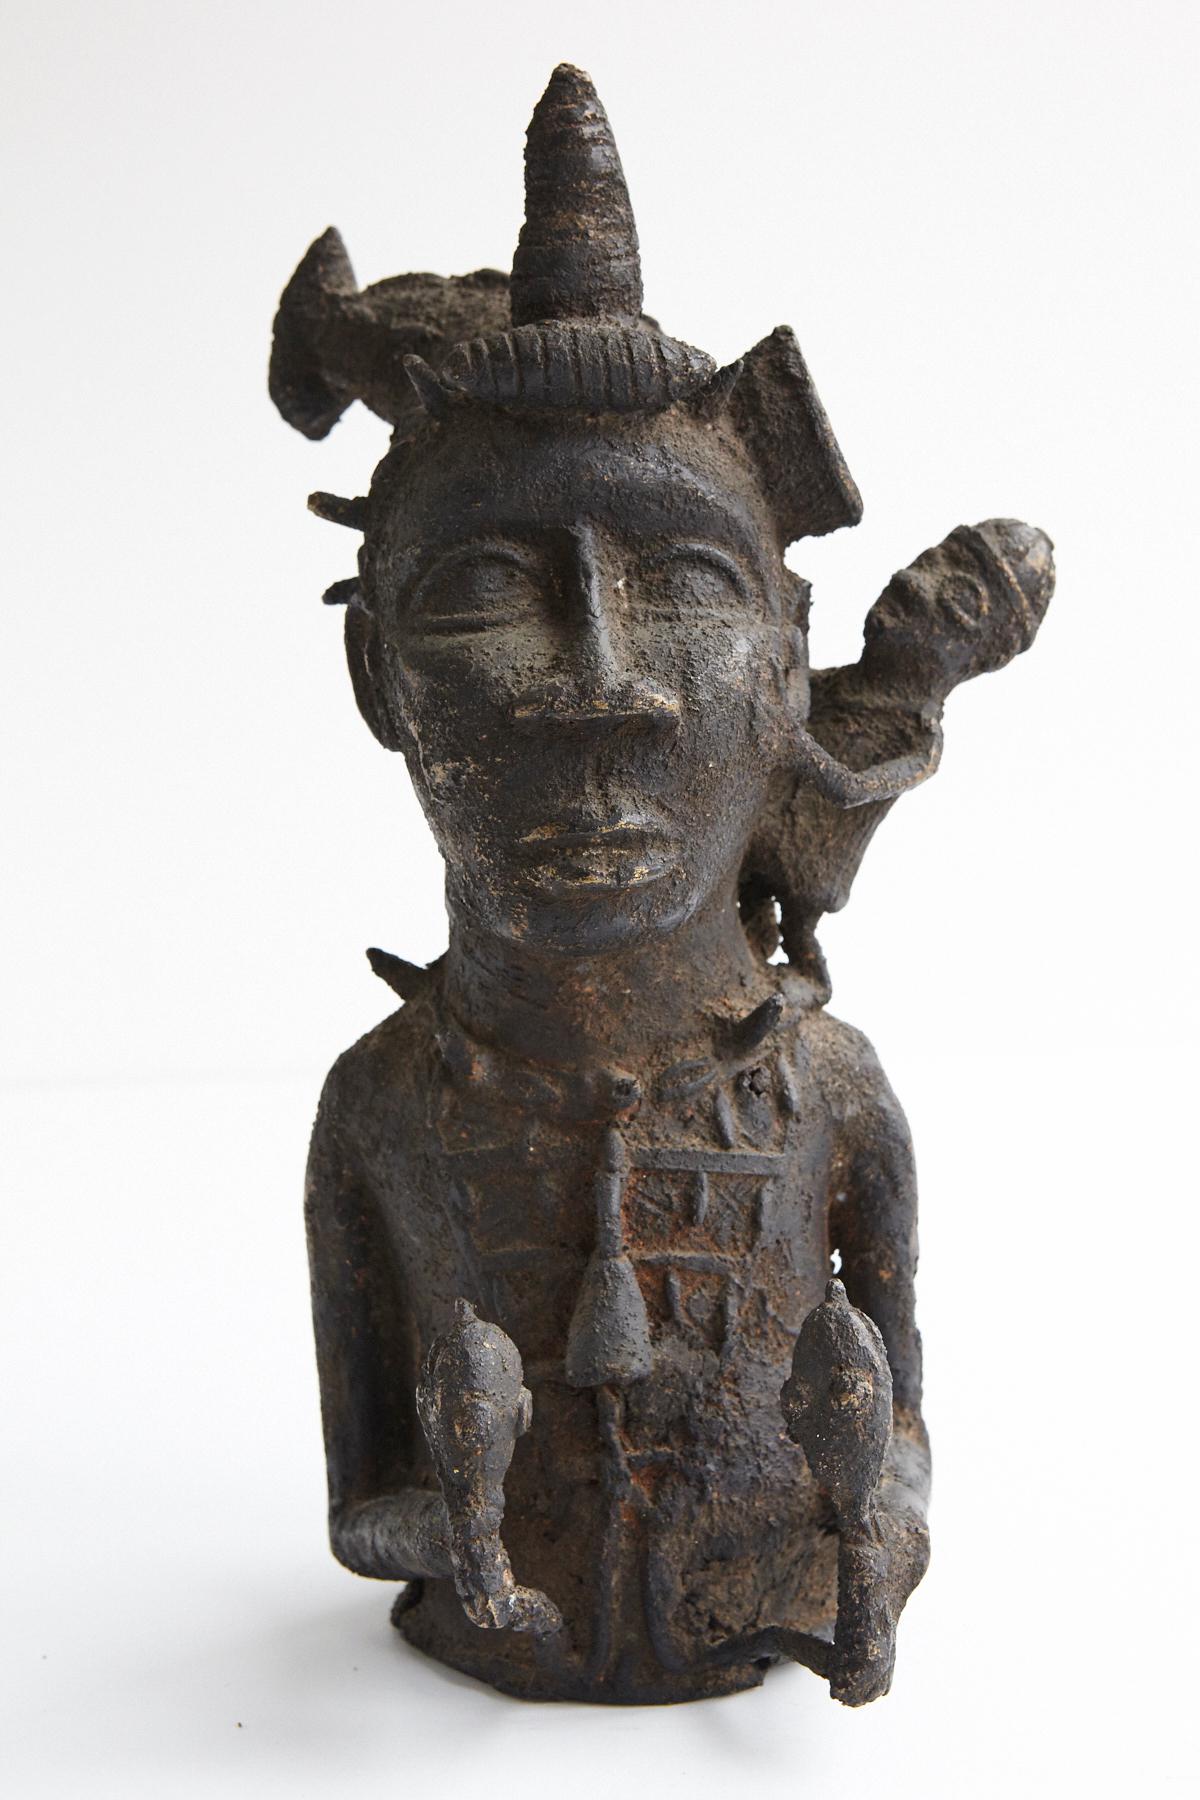 Les statues de Juju Man ou de chamans étaient utilisées pour les cérémonies liées aux croyances religieuses et aux pratiques magiques. L'interprétation générale de leur signification comme incluant un pouvoir surnaturel ou magique d'apporter le bien